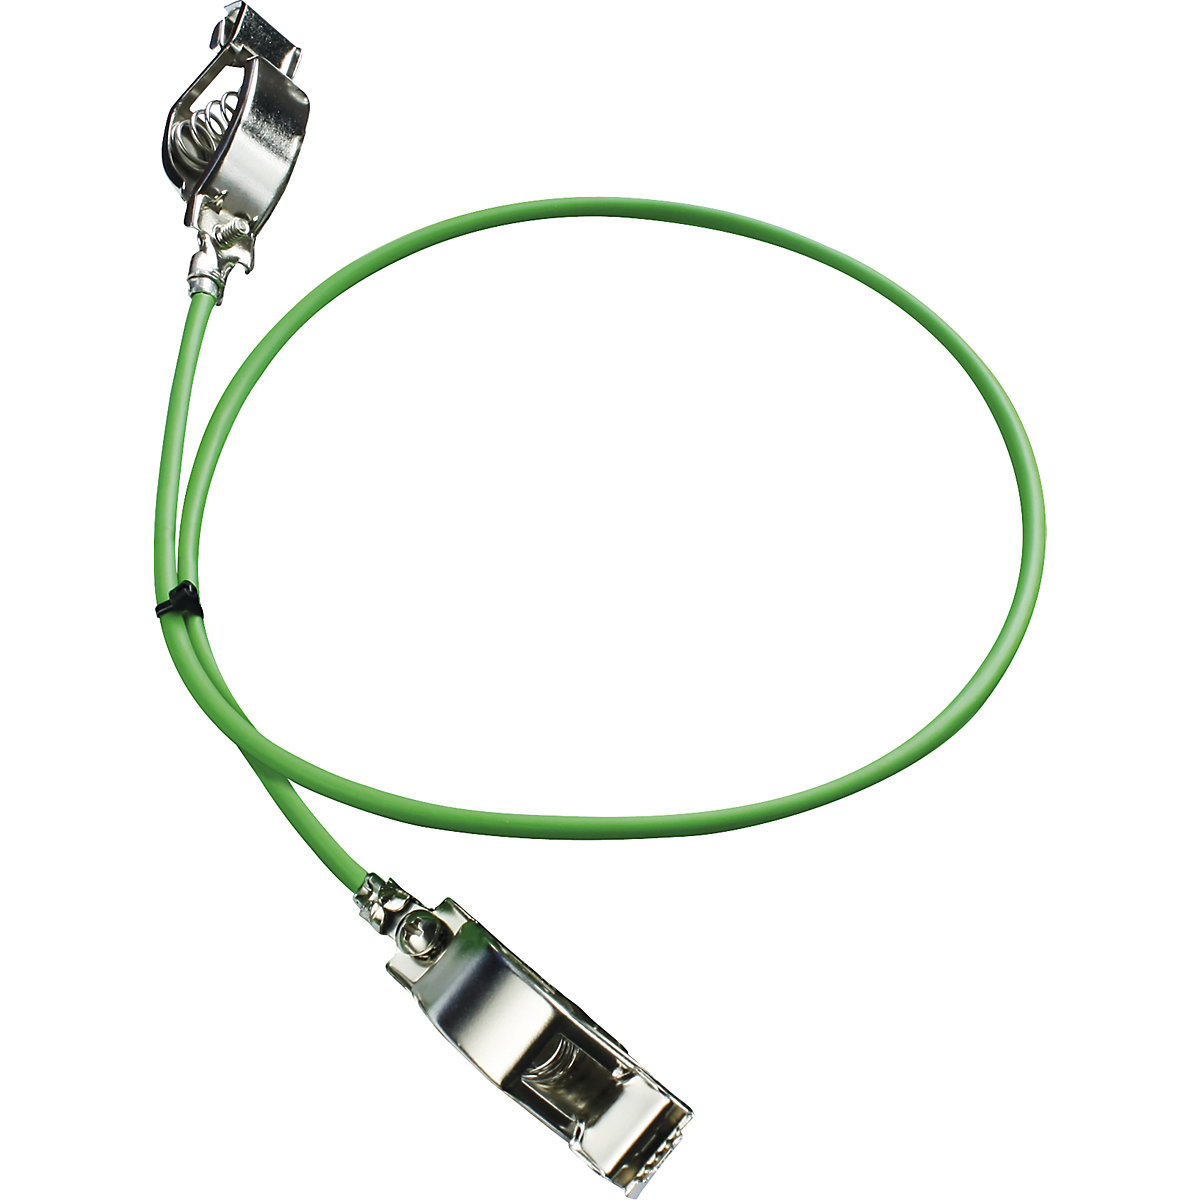 Uzemňovací kabel – Jessberger, jako vyrovnání potenciálů, bal.j. 5 ks, délka 3 m-3